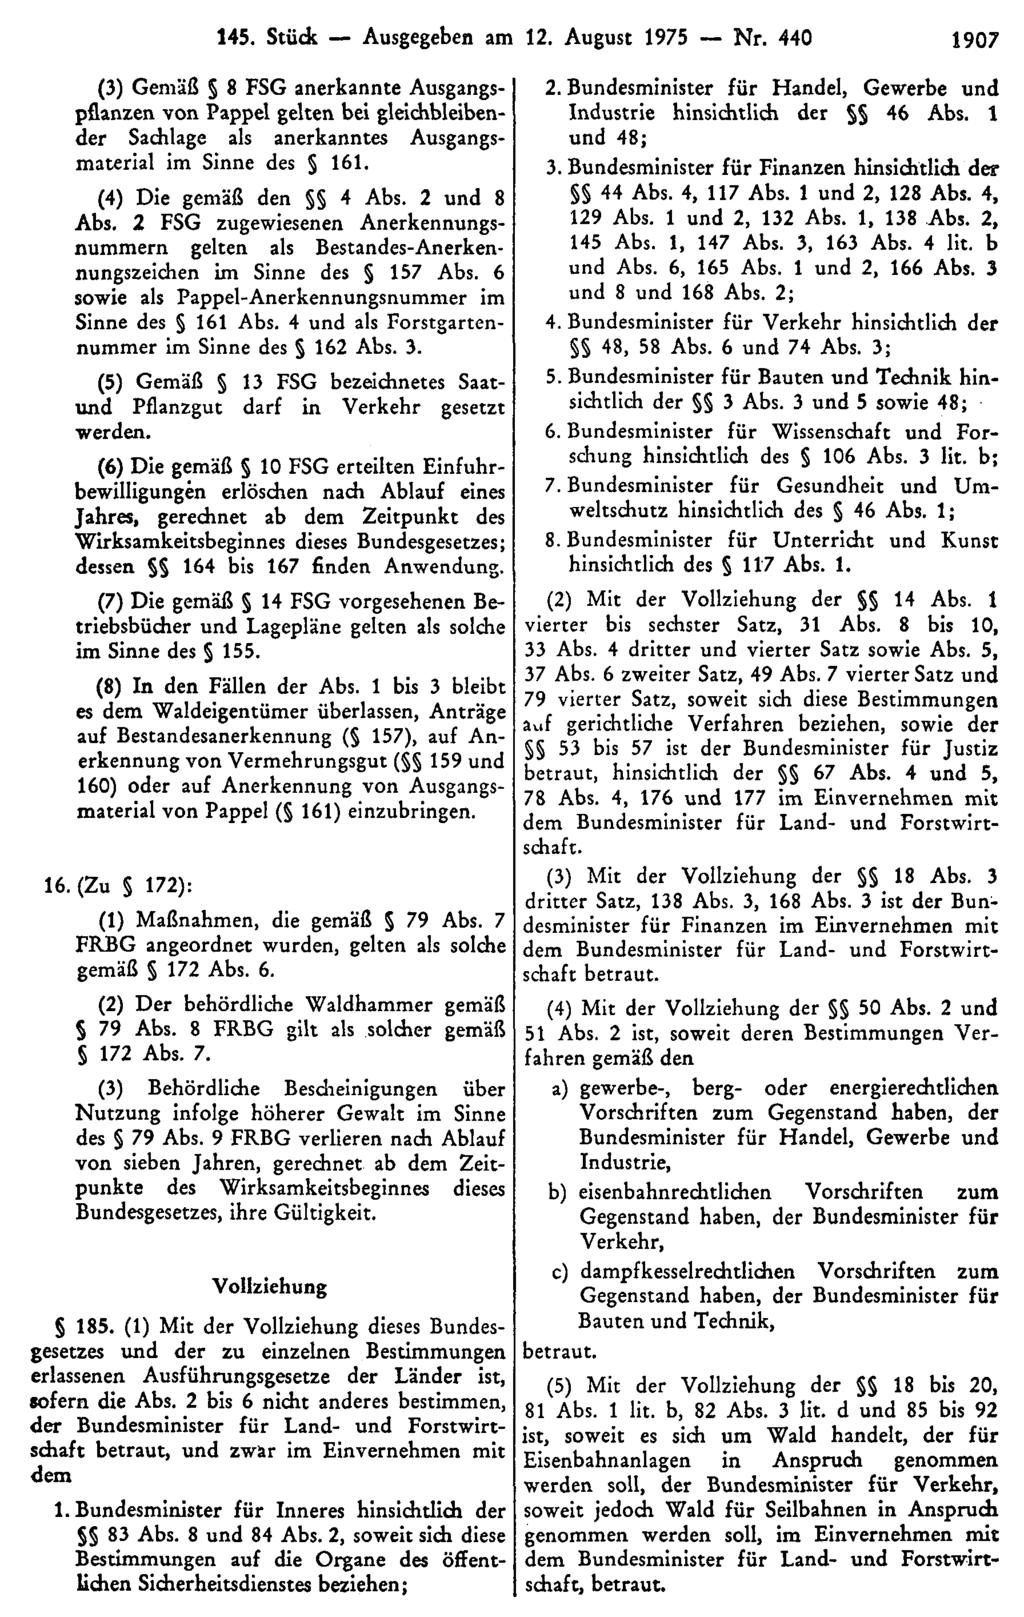 145. Stück Ausgegeben am 12. August 1975 Nr. 440 1907 (3) Gemäß 8 FSG anerkannte Ausgangspflanzen von Pappel gelten bei gleichbleibender Sachlage als anerkanntes Ausgangsmaterial im Sinne des 161.